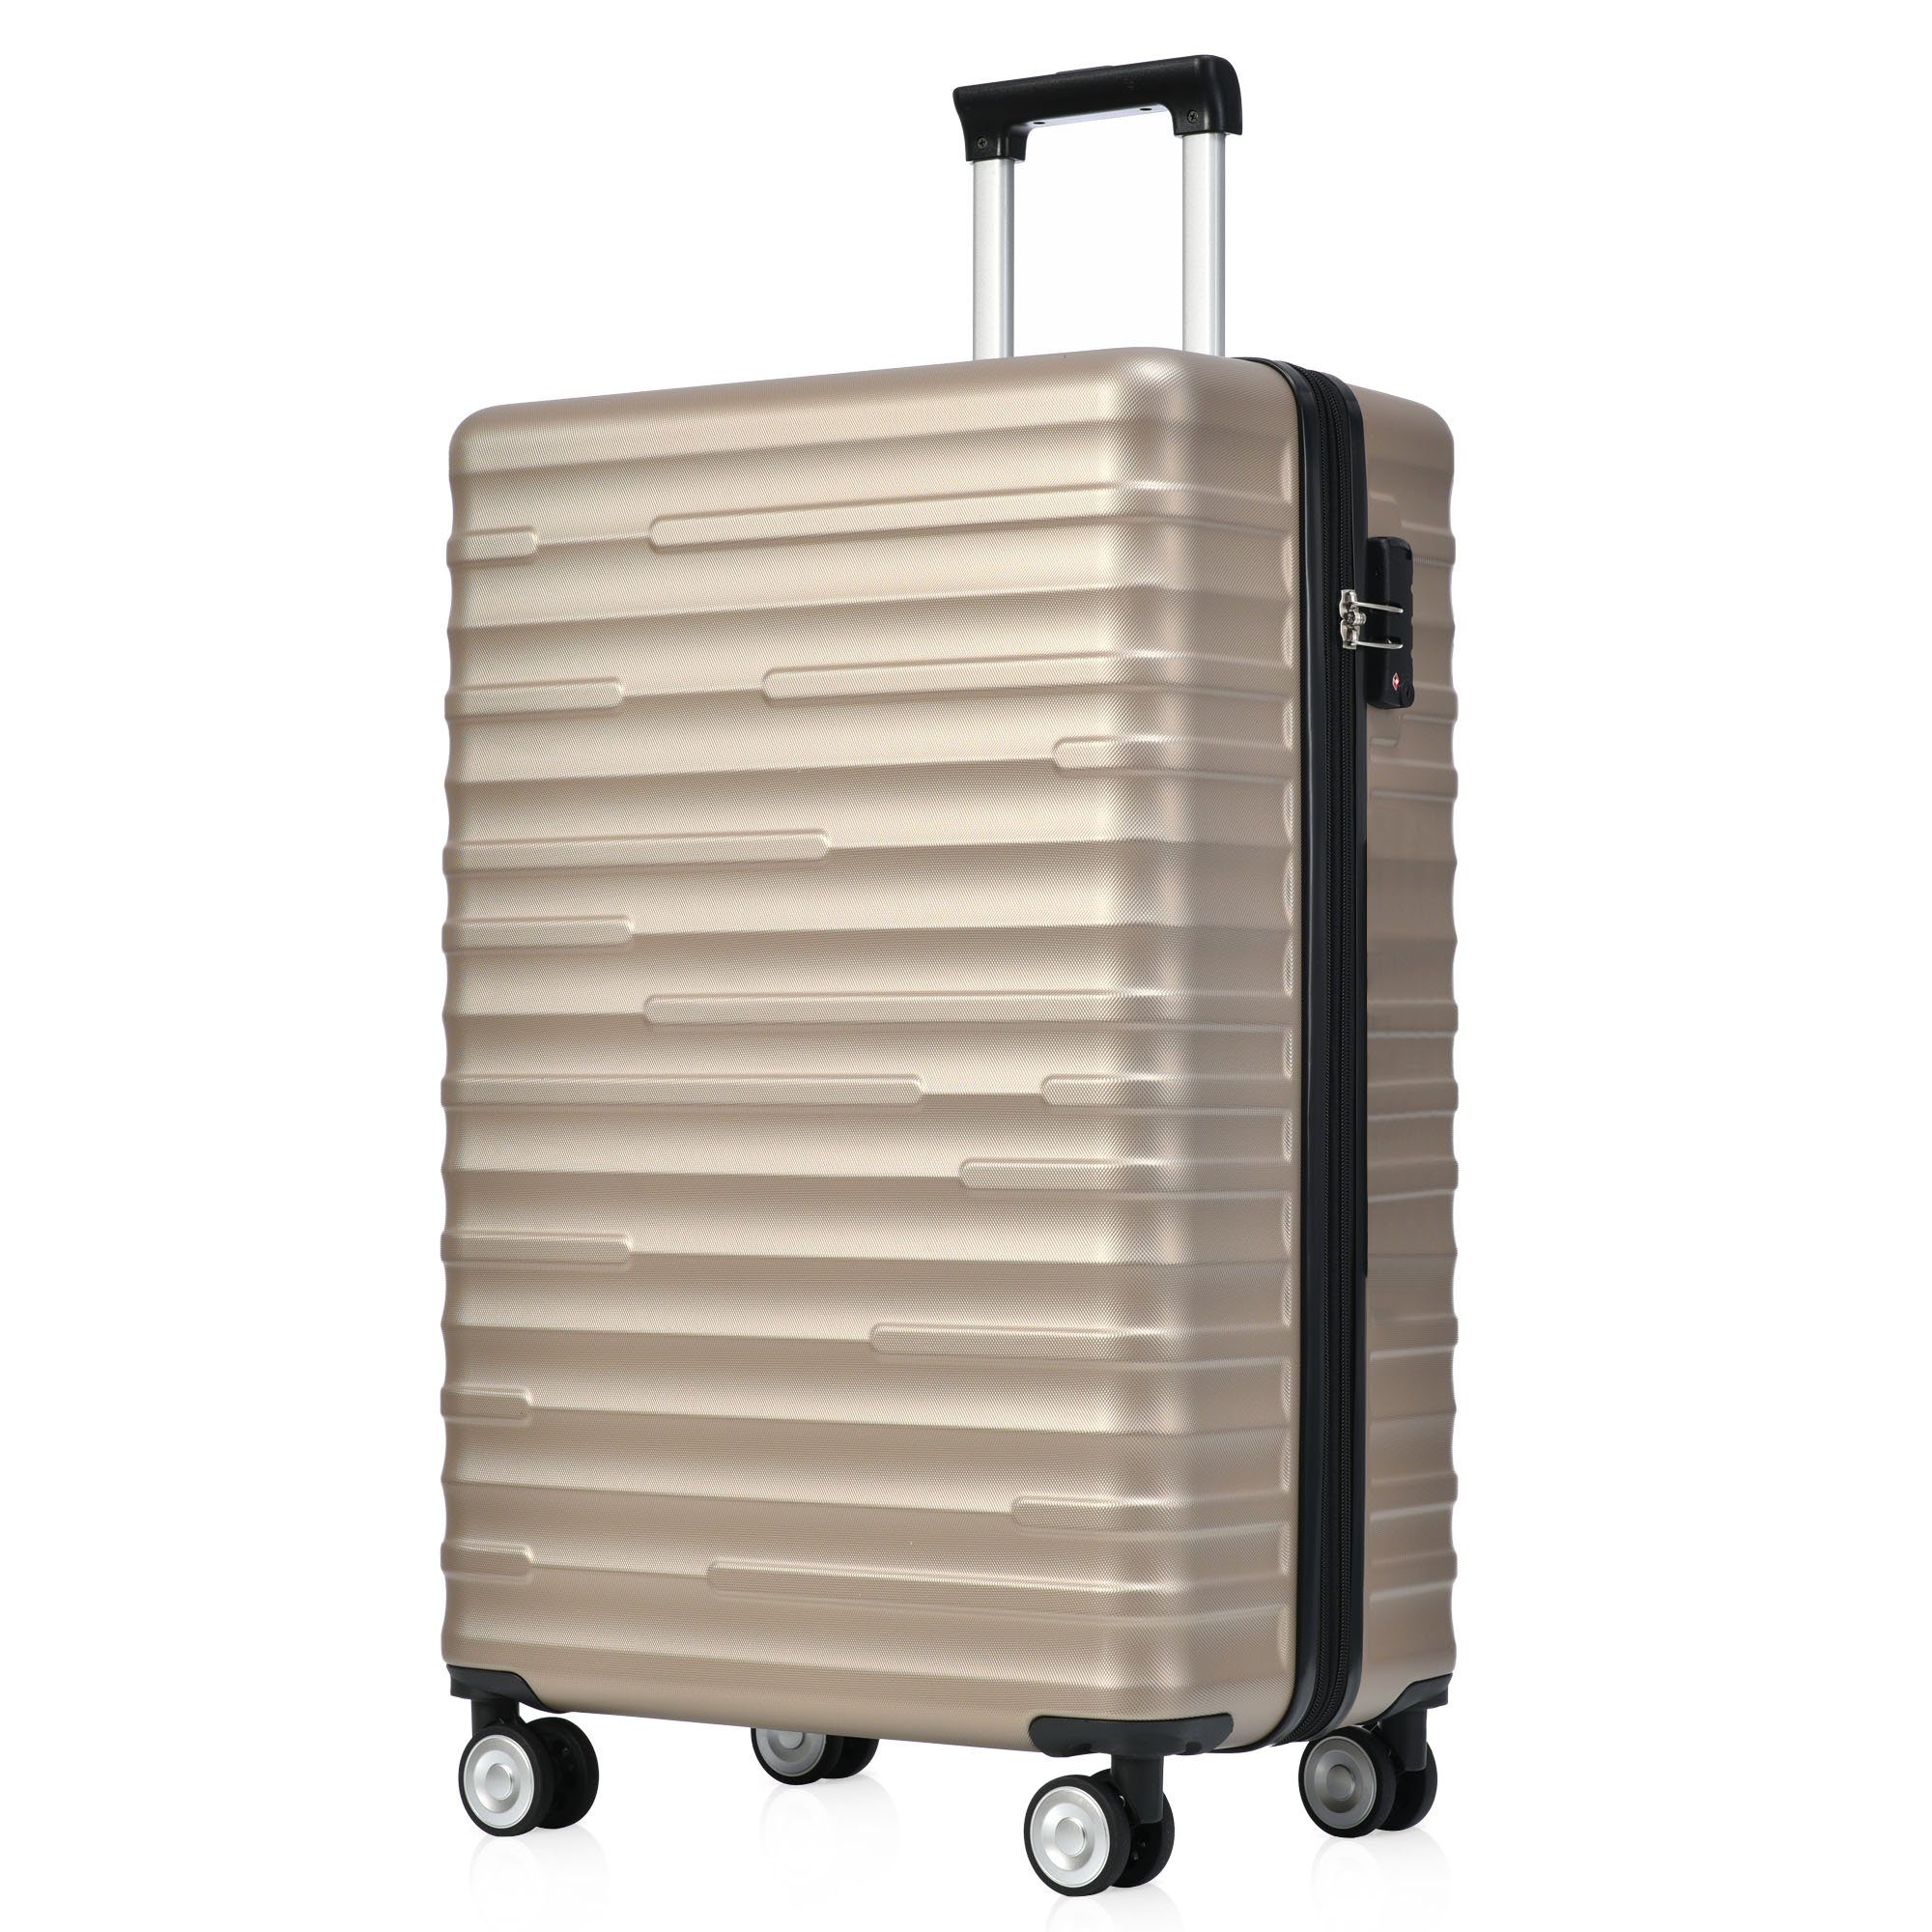 Räder, Handgepäckkoffer asserdichtes TSA-Schloss, Design, ABS-Gepäck, Gold 4 zuverlässiger stilvoll Hochwertiges Reisebegleiter, REDOM